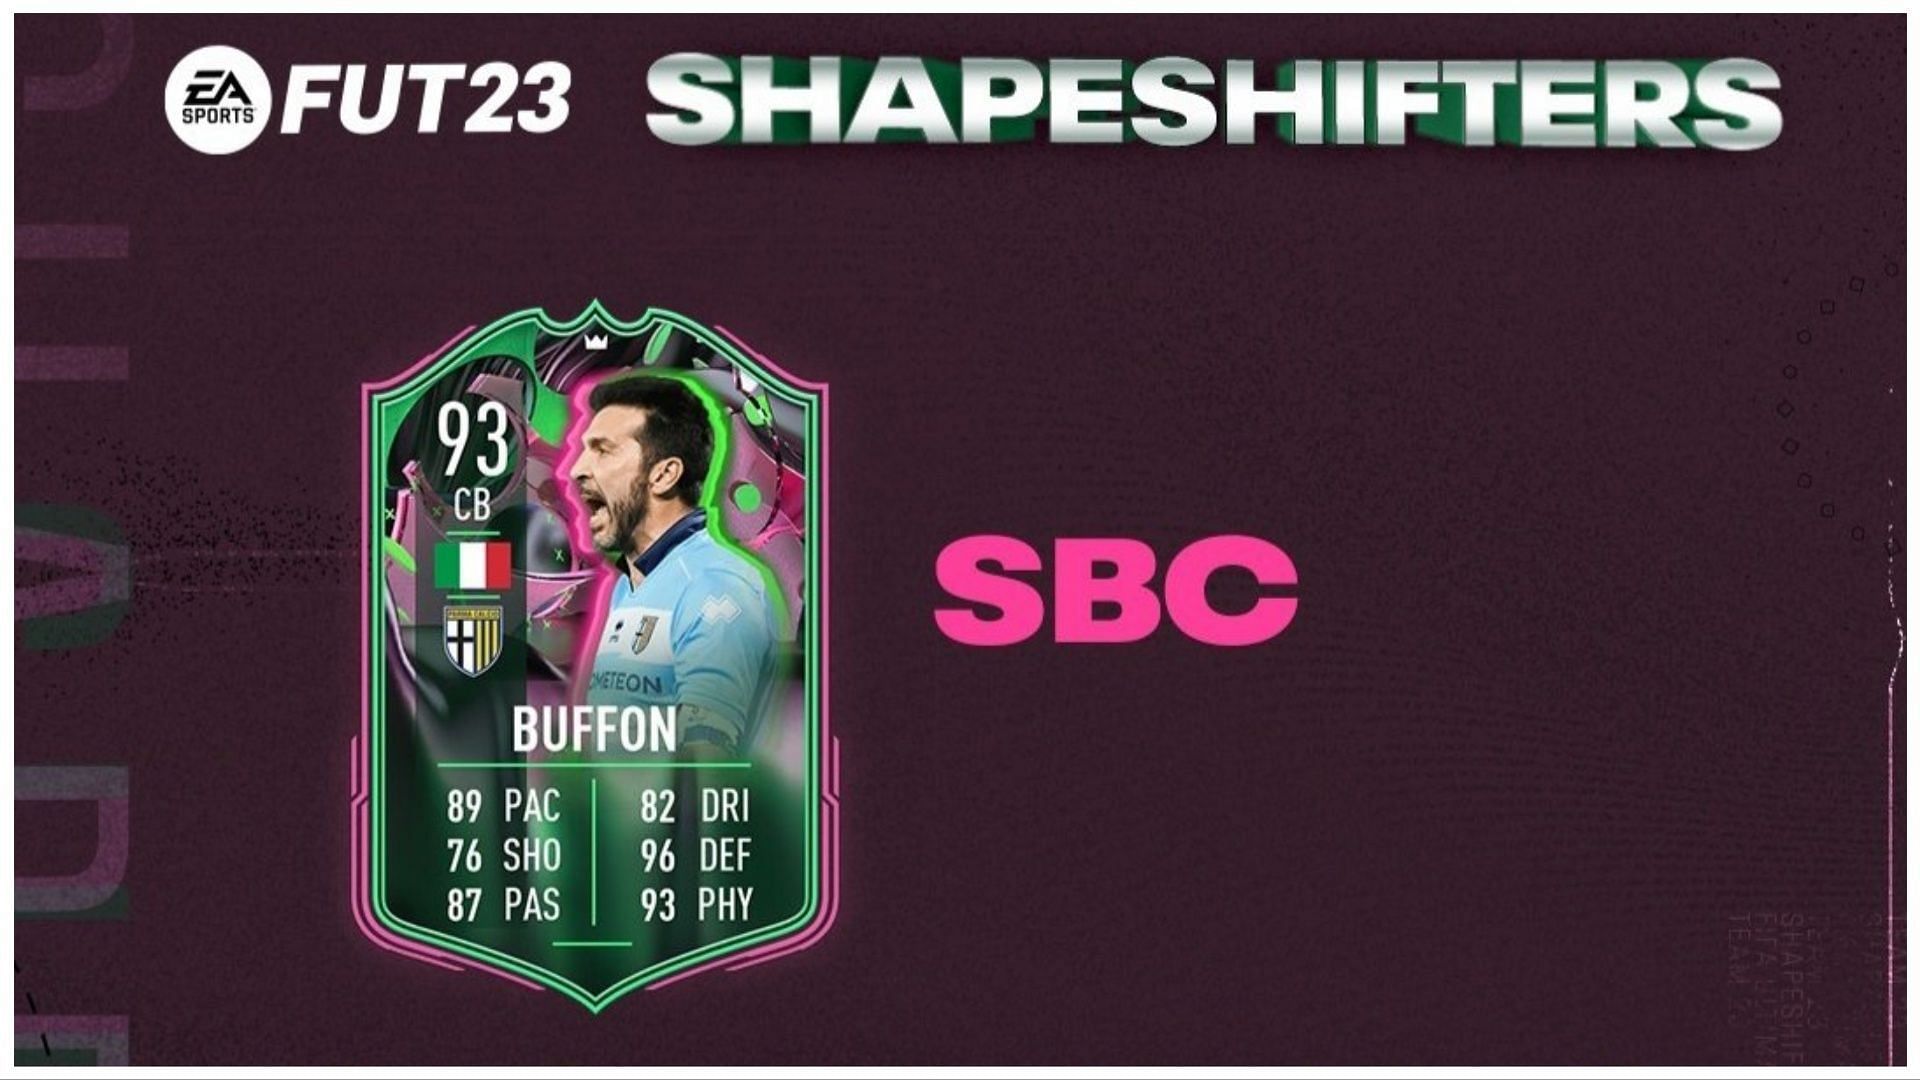 Shapeshifters Buffon is now live (Image via EA Sports)